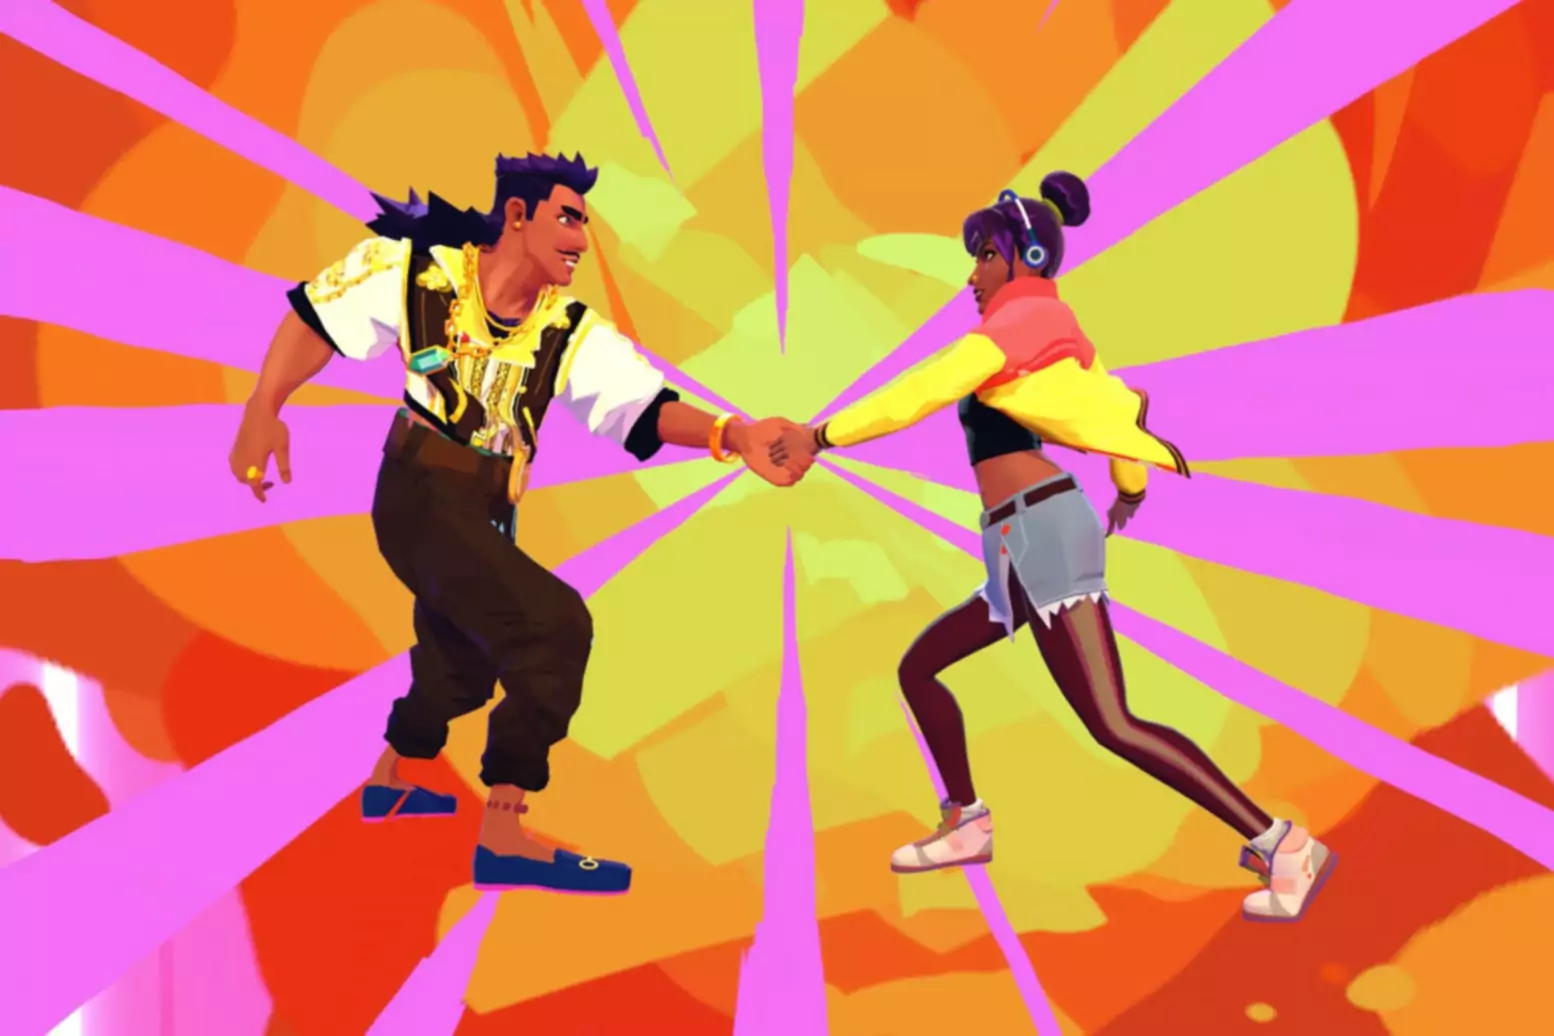 Parlak renkli fon üzerinde el sıkışan iki karakterin yer aldığı Thirsty Suitors oyununun ekran görüntüsü